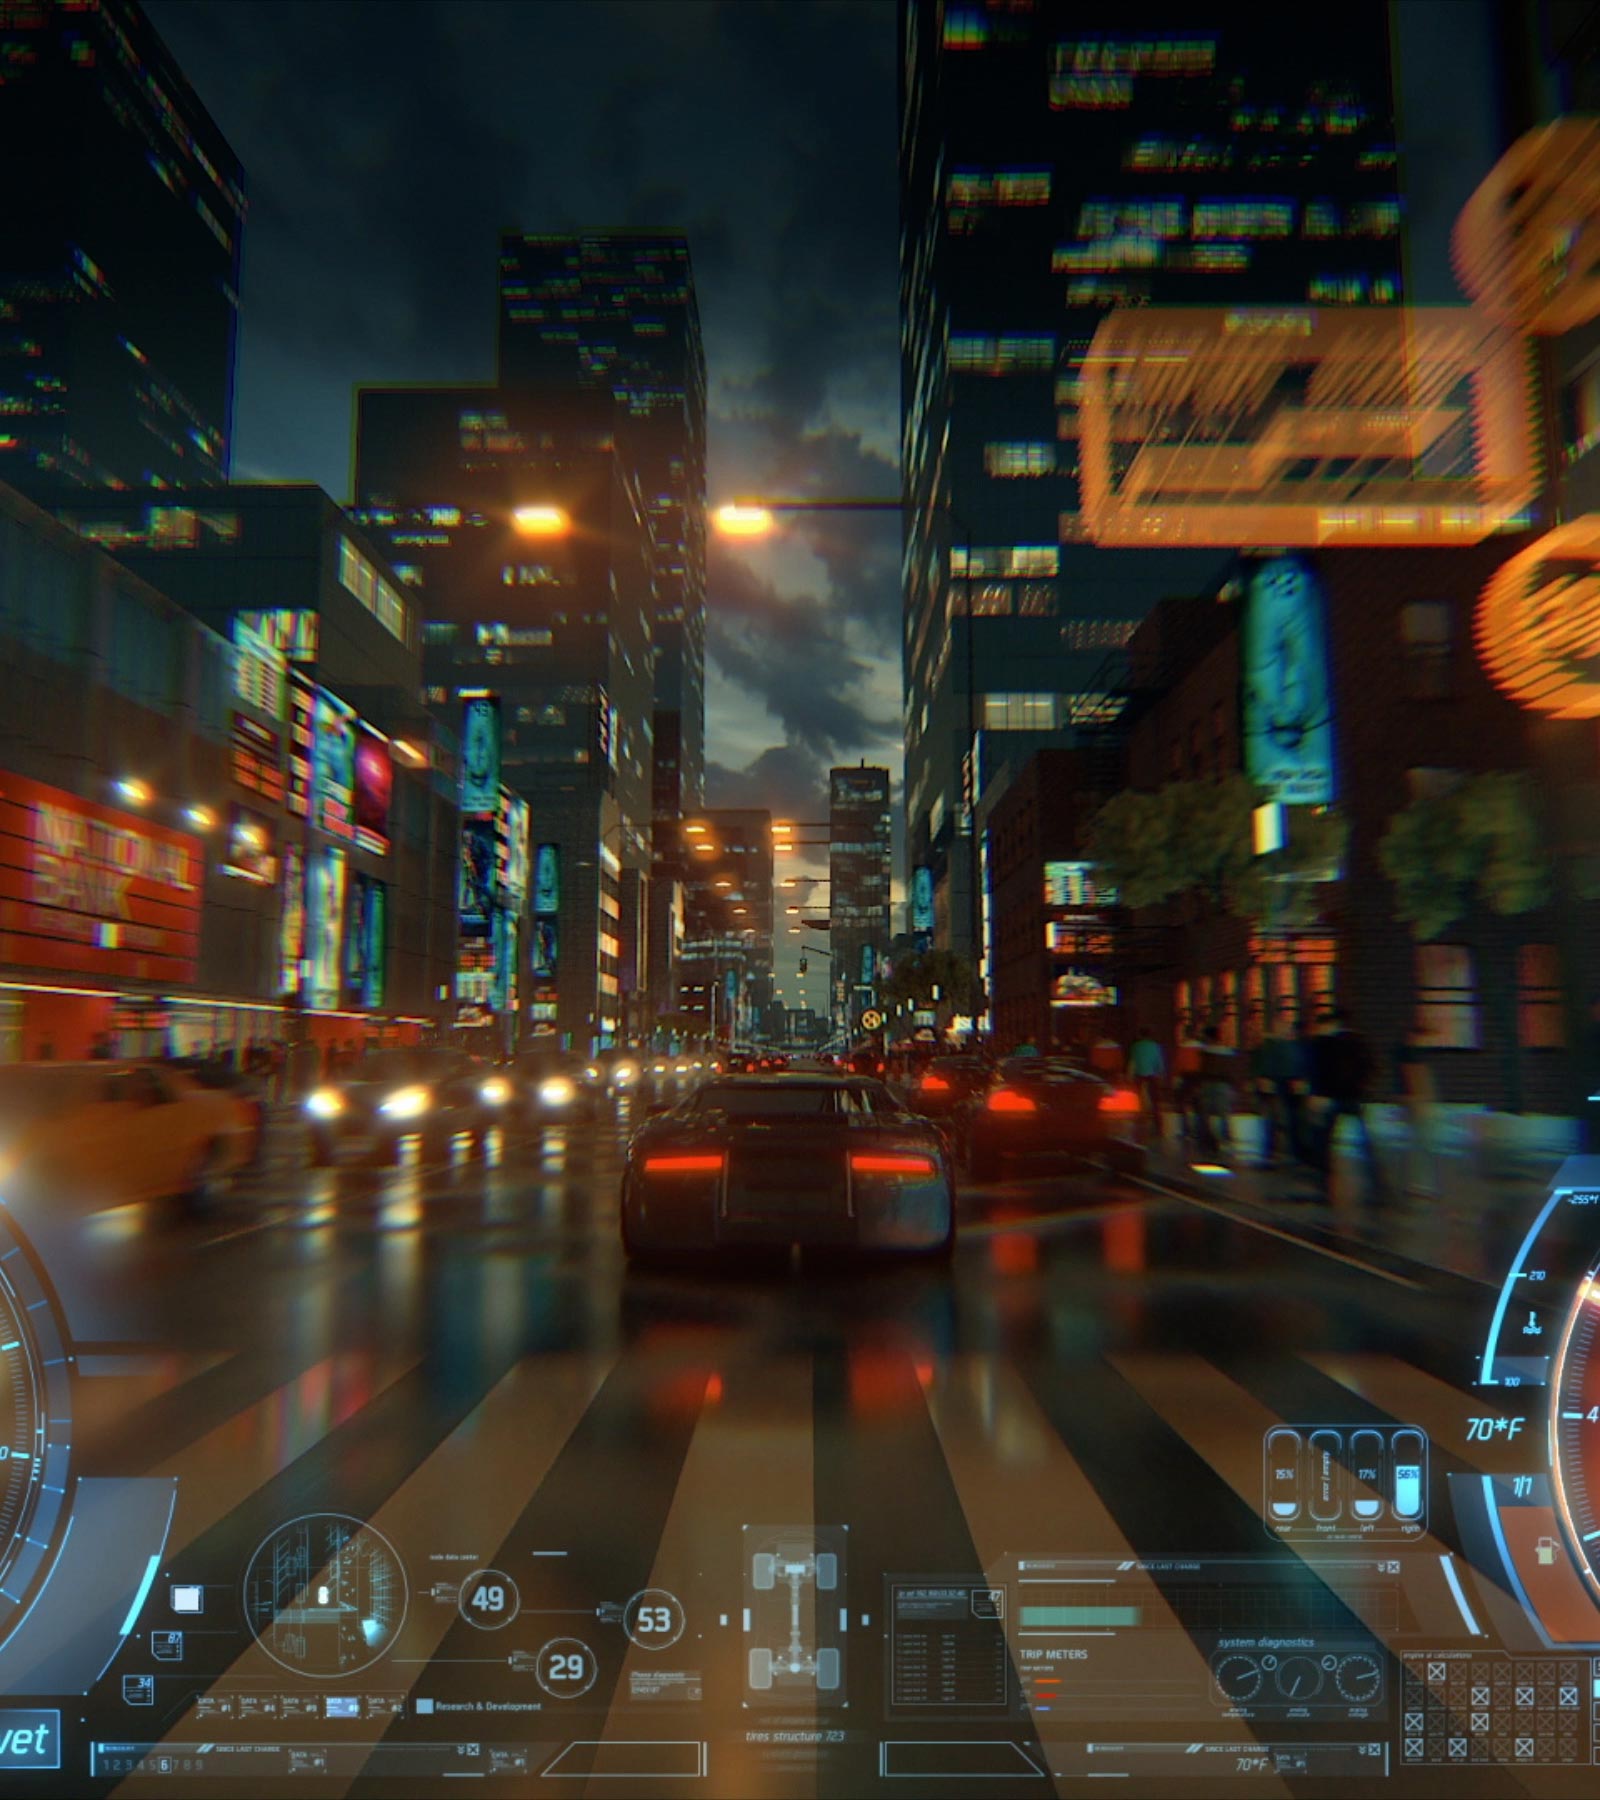 Une vidéo qui suit une voiture par derrière dans un jeu vidéo alors qu'elle roule dans une rue de la ville très éclairée au crépuscule.